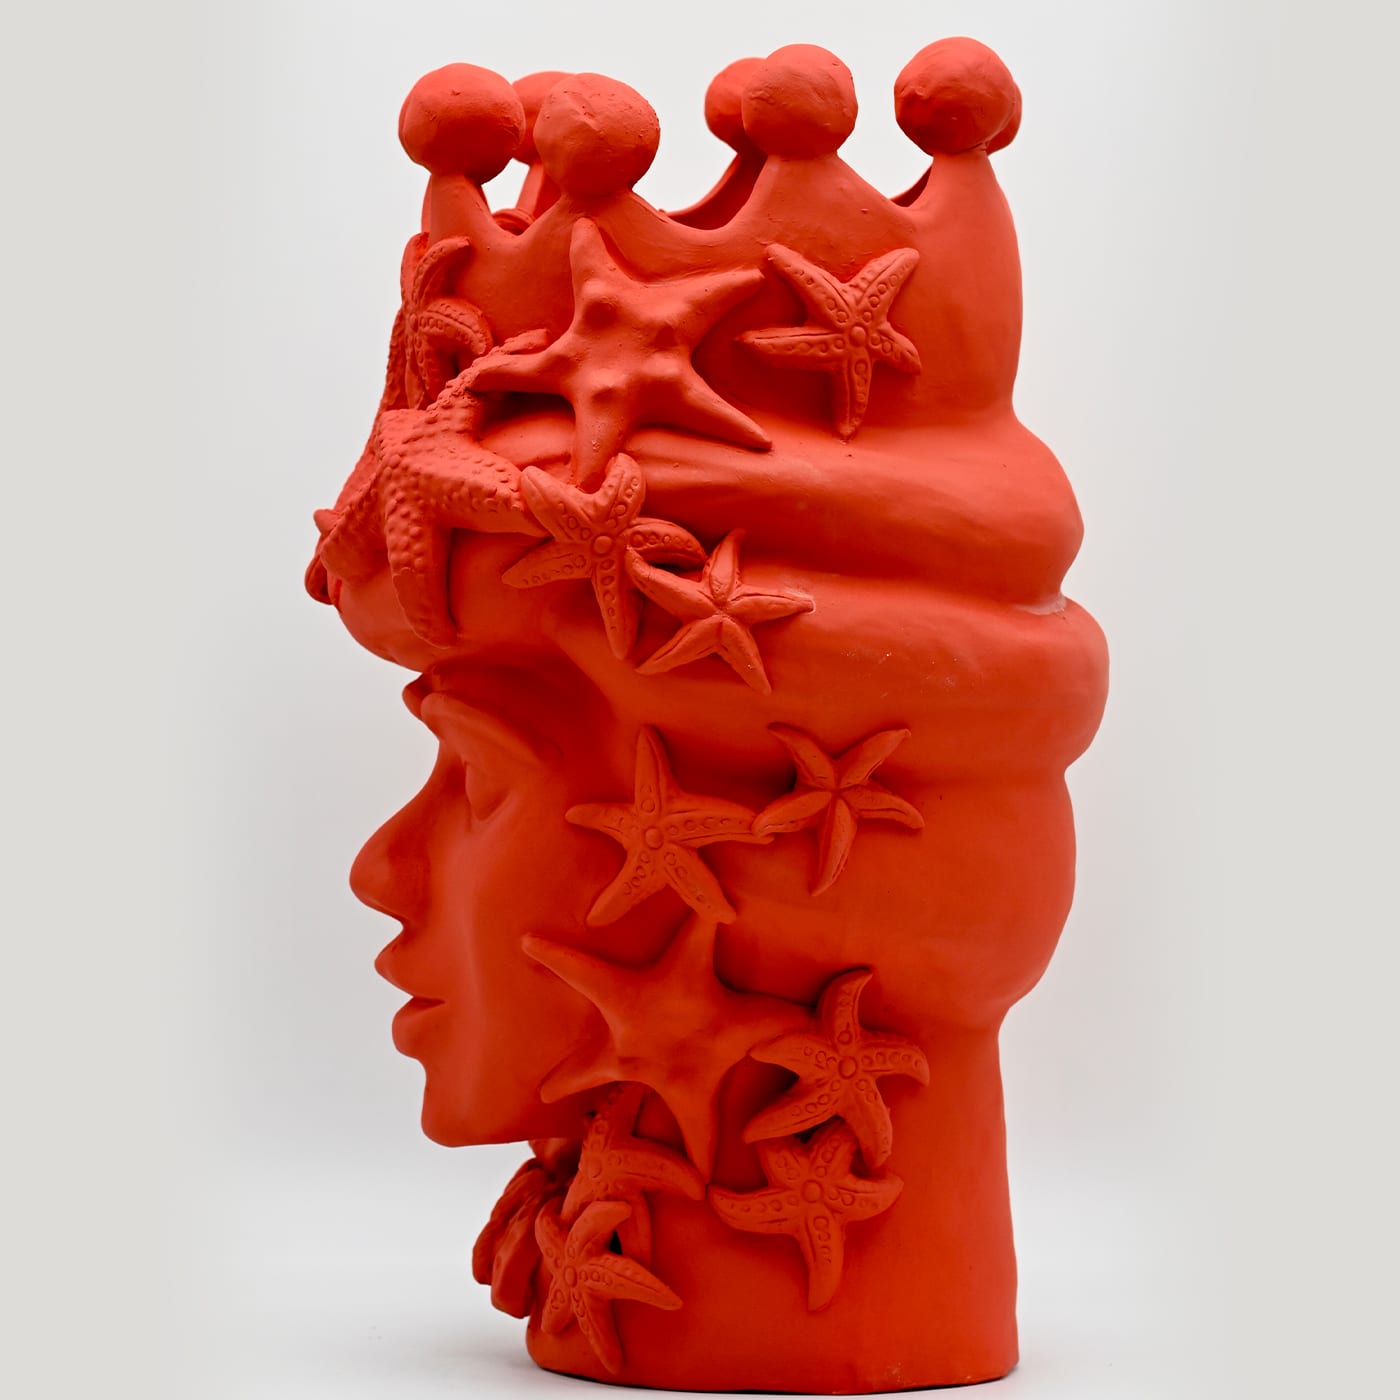 Red Handmade Moor's Head Sculpture